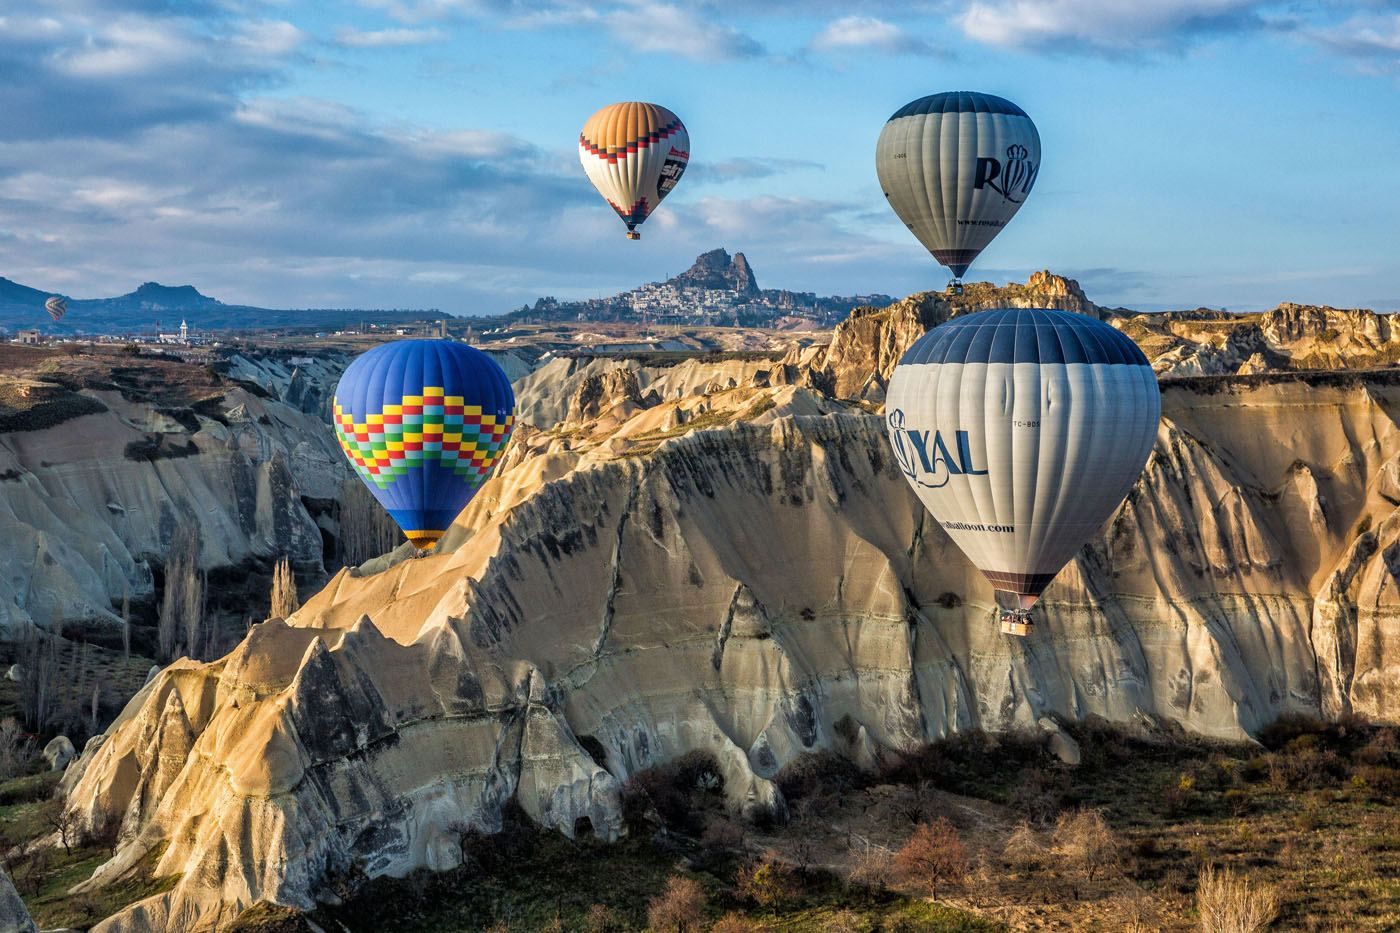 Cappadocia Balloons Love Valley